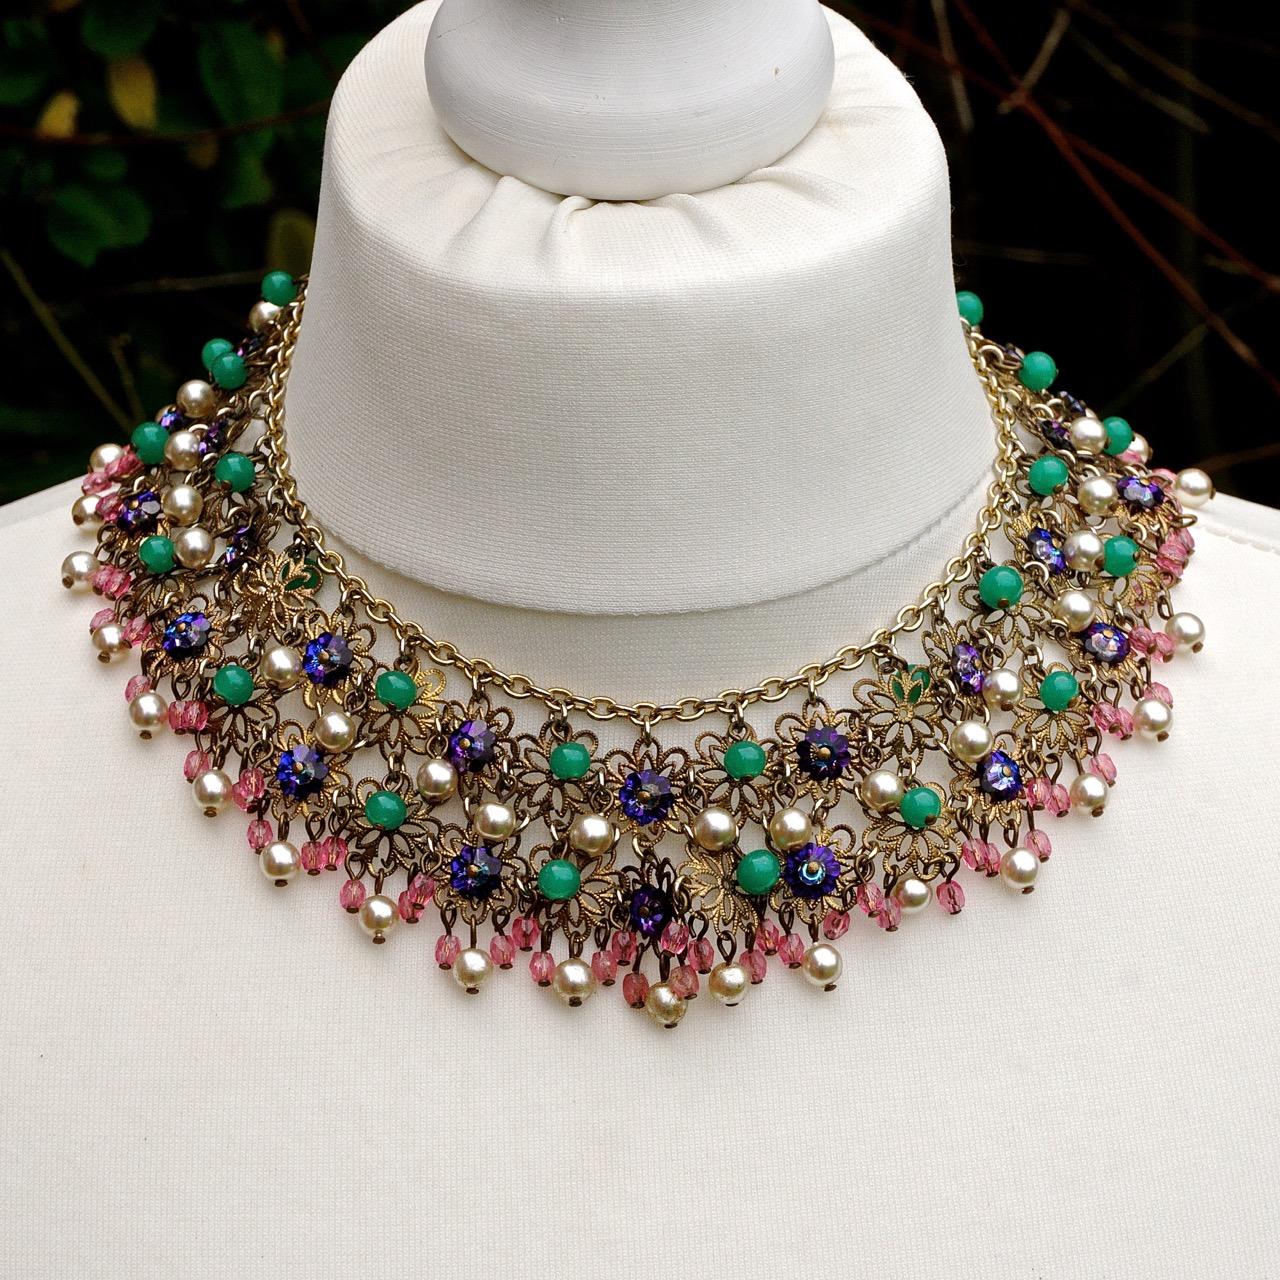 Fabuleux collier de perles de verre et de fausses perles. Les perles de verre sont des perles roses facettées, des perles vertes rondes, des perles plates violettes et des fausses perles. Elles sont attachées à deux rangées de fleurs en filigrane de